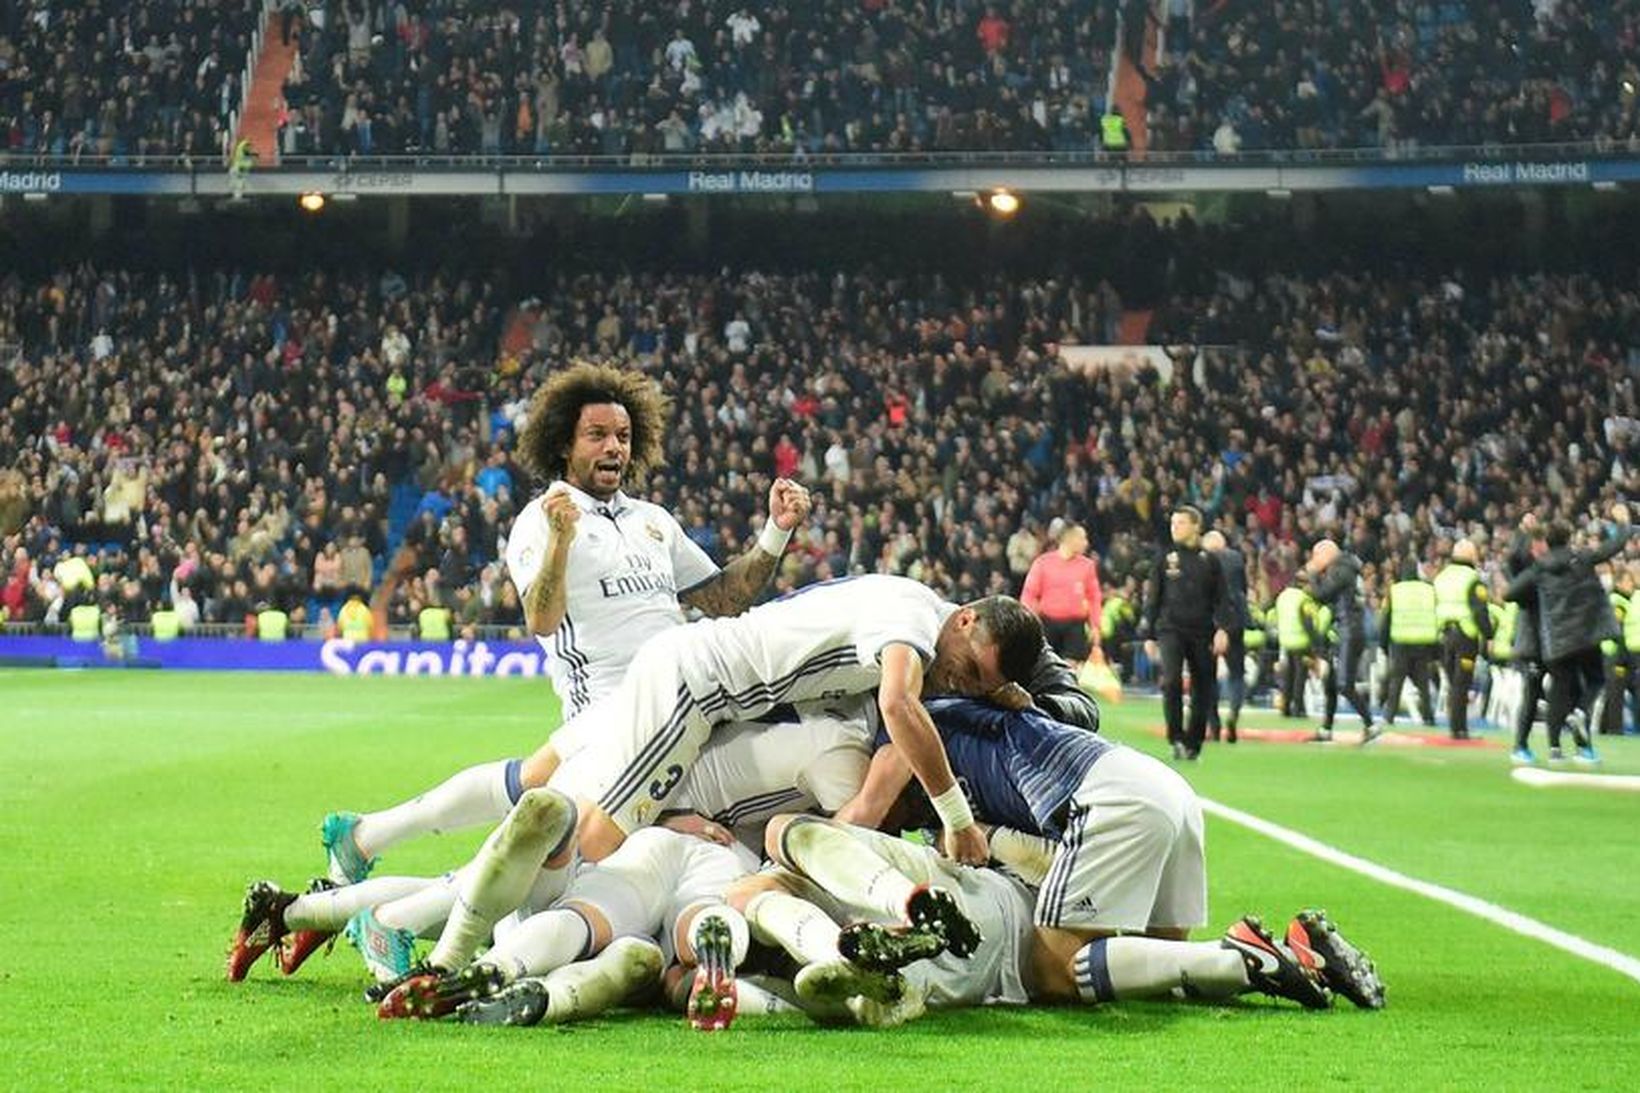 Leikmenn Real Madrid fagna sigurmarki Sergio Ramos í uppbótartíma í …